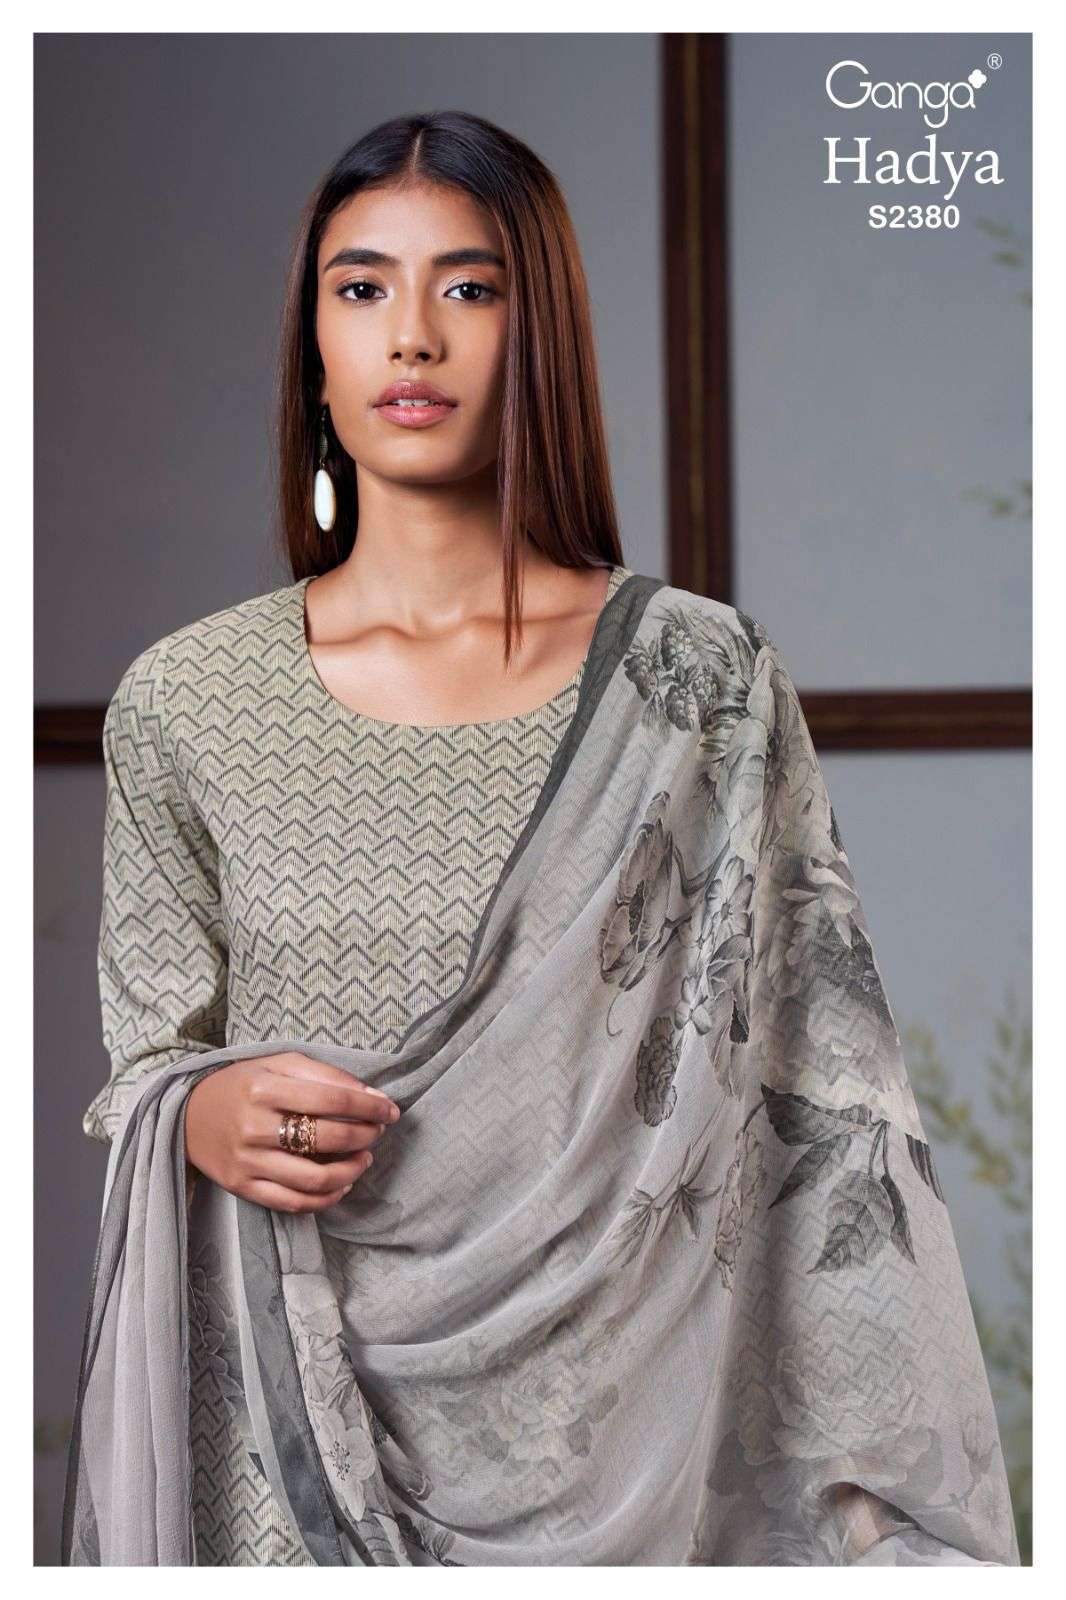 Ganga Fashion Hadya 2380 Printed Cotton Salwar Kameez Catalog Exporters